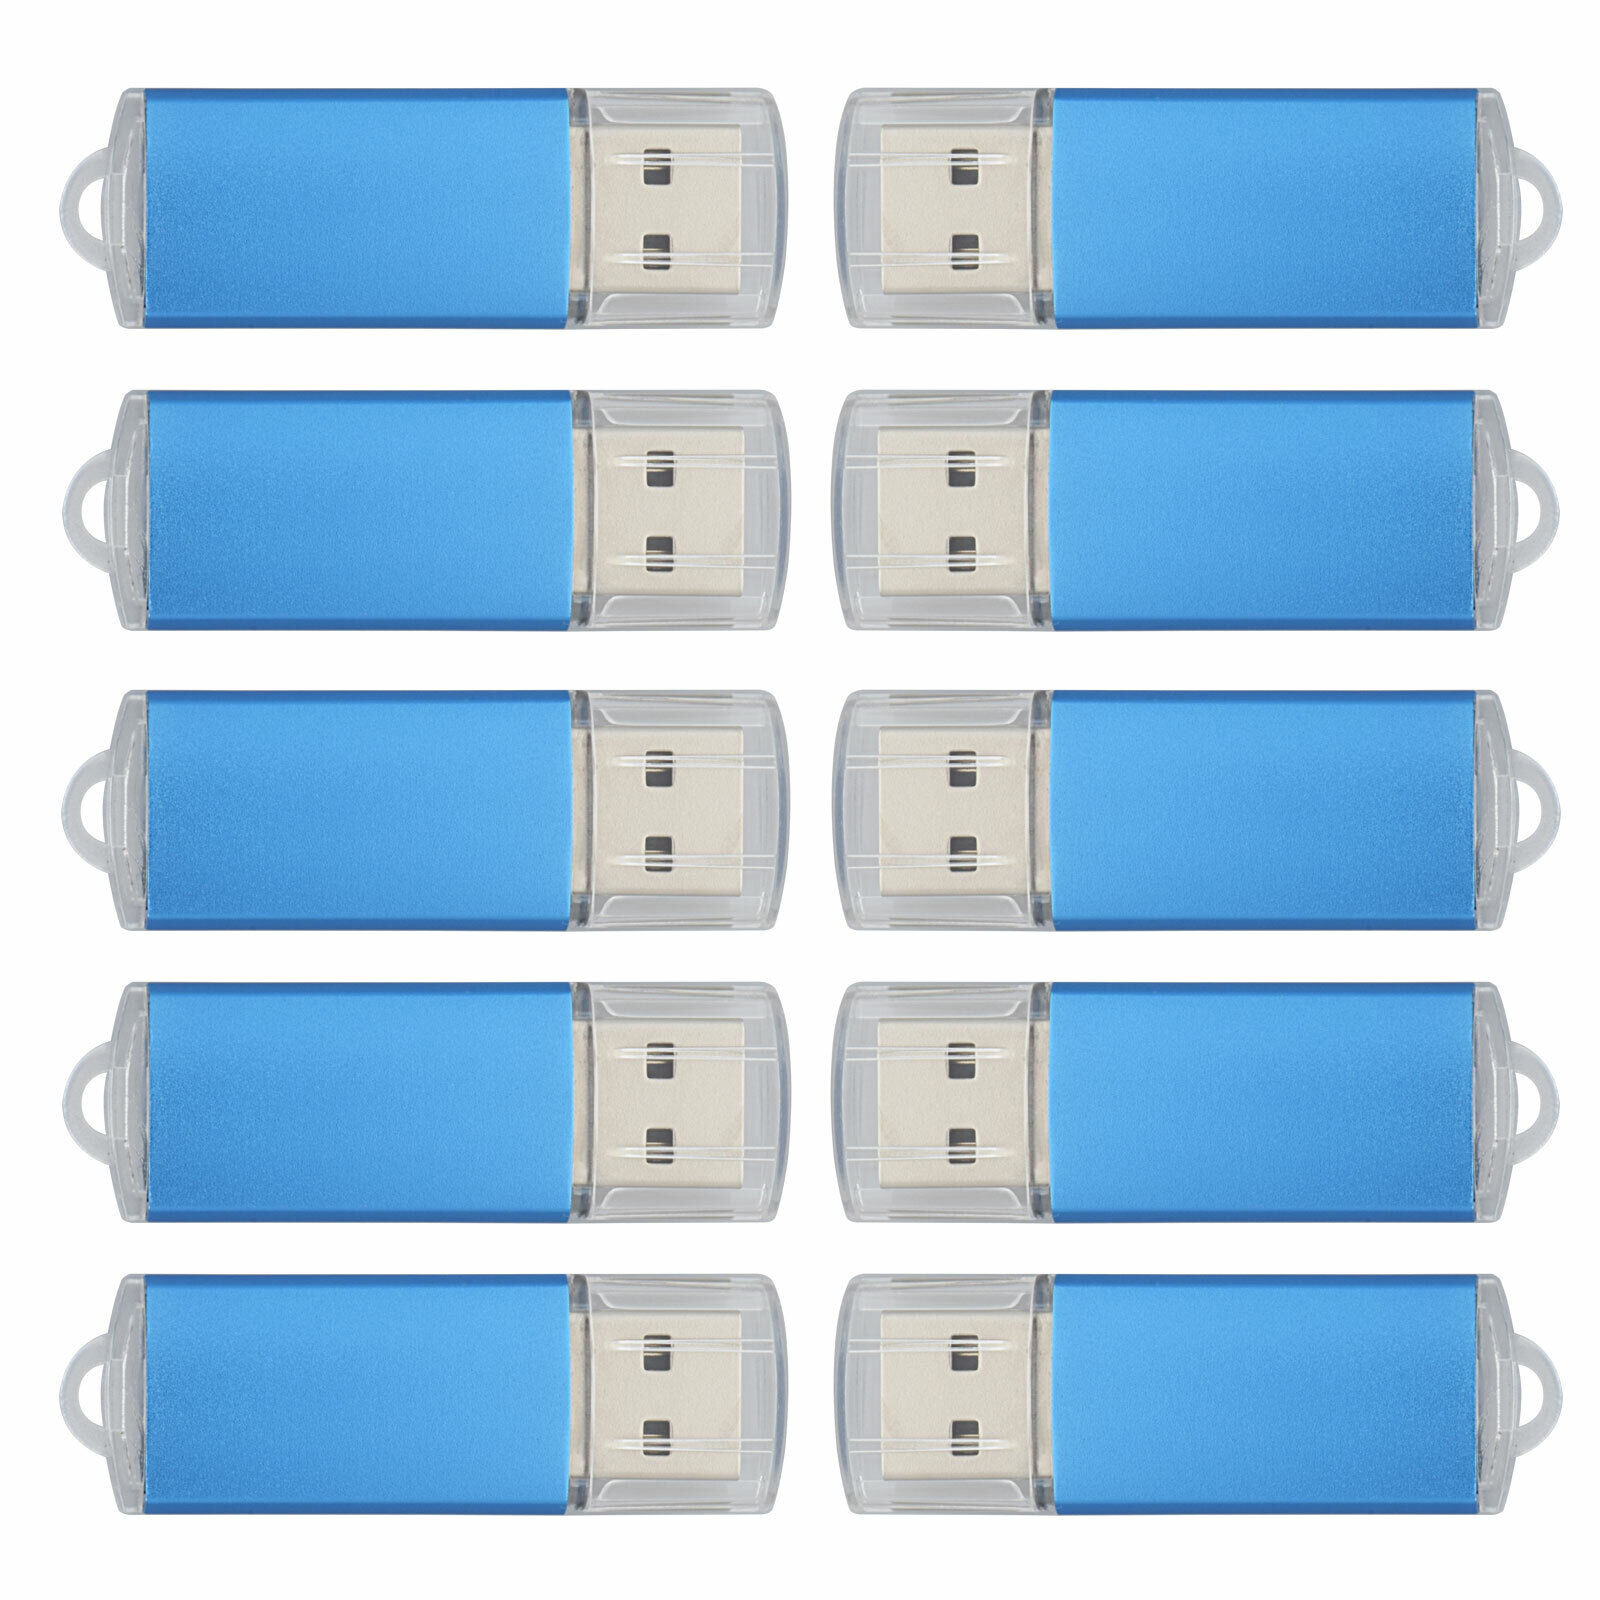 Kootion 10Pack 1g 2g 4g 8g 16g 32g 64g USB 2.0 Flash Drives Memory Thumb Sticks 